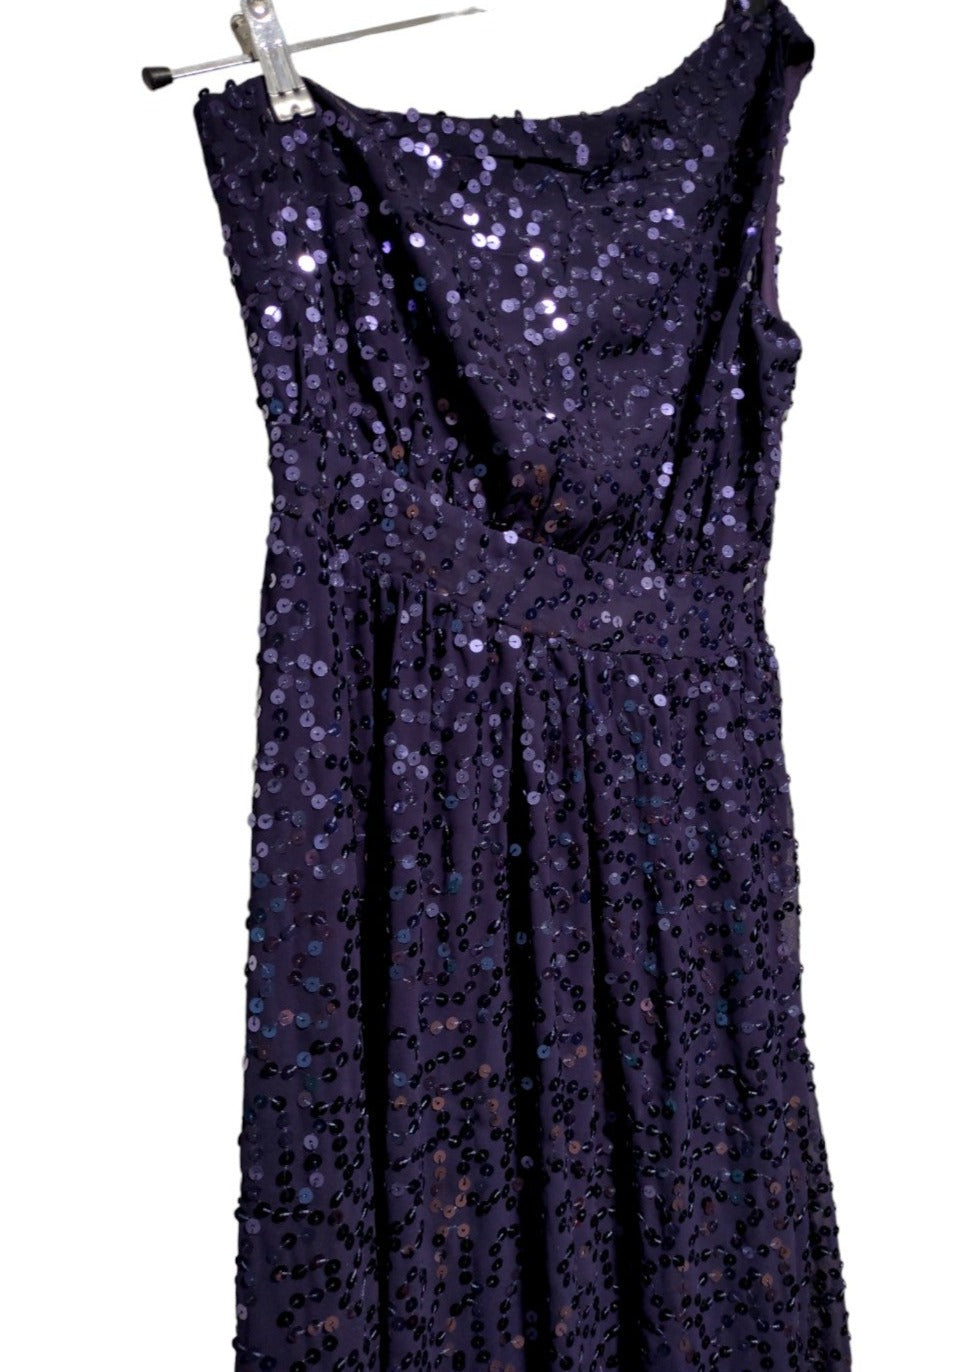 Αμπιγιέ, Maxi Φόρεμα με Παγιέτες ΒΟΟΗΟΟ OCCASION σε Μωβ-Μπλε χρώμα (Small)